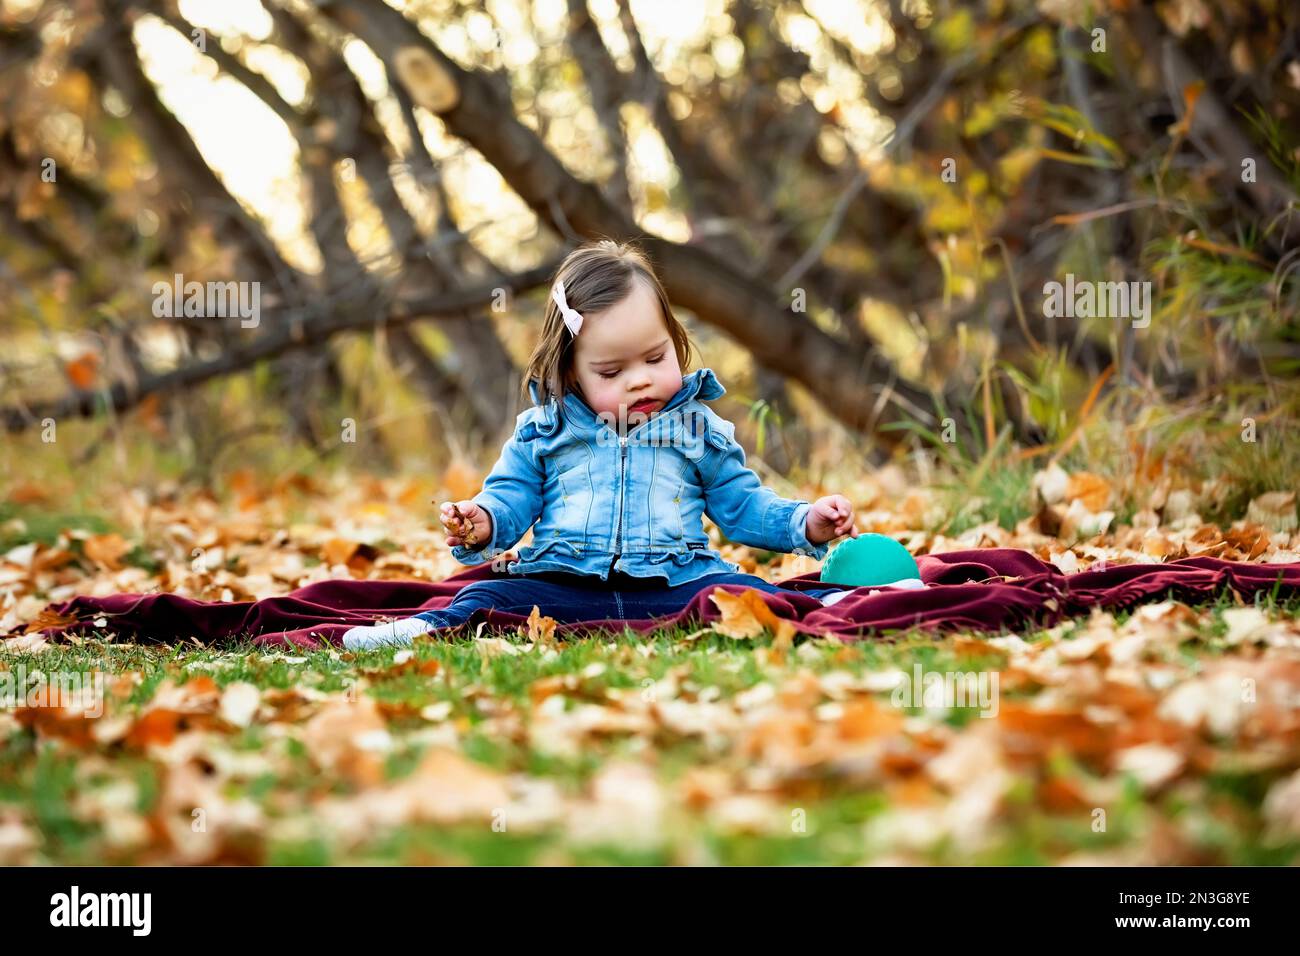 Porträt eines kleinen Mädchens mit Down-Syndrom, das in der Herbstsaison zwischen den gefallenen Blättern in einem Stadtpark auf dem Boden sitzt Stockfoto